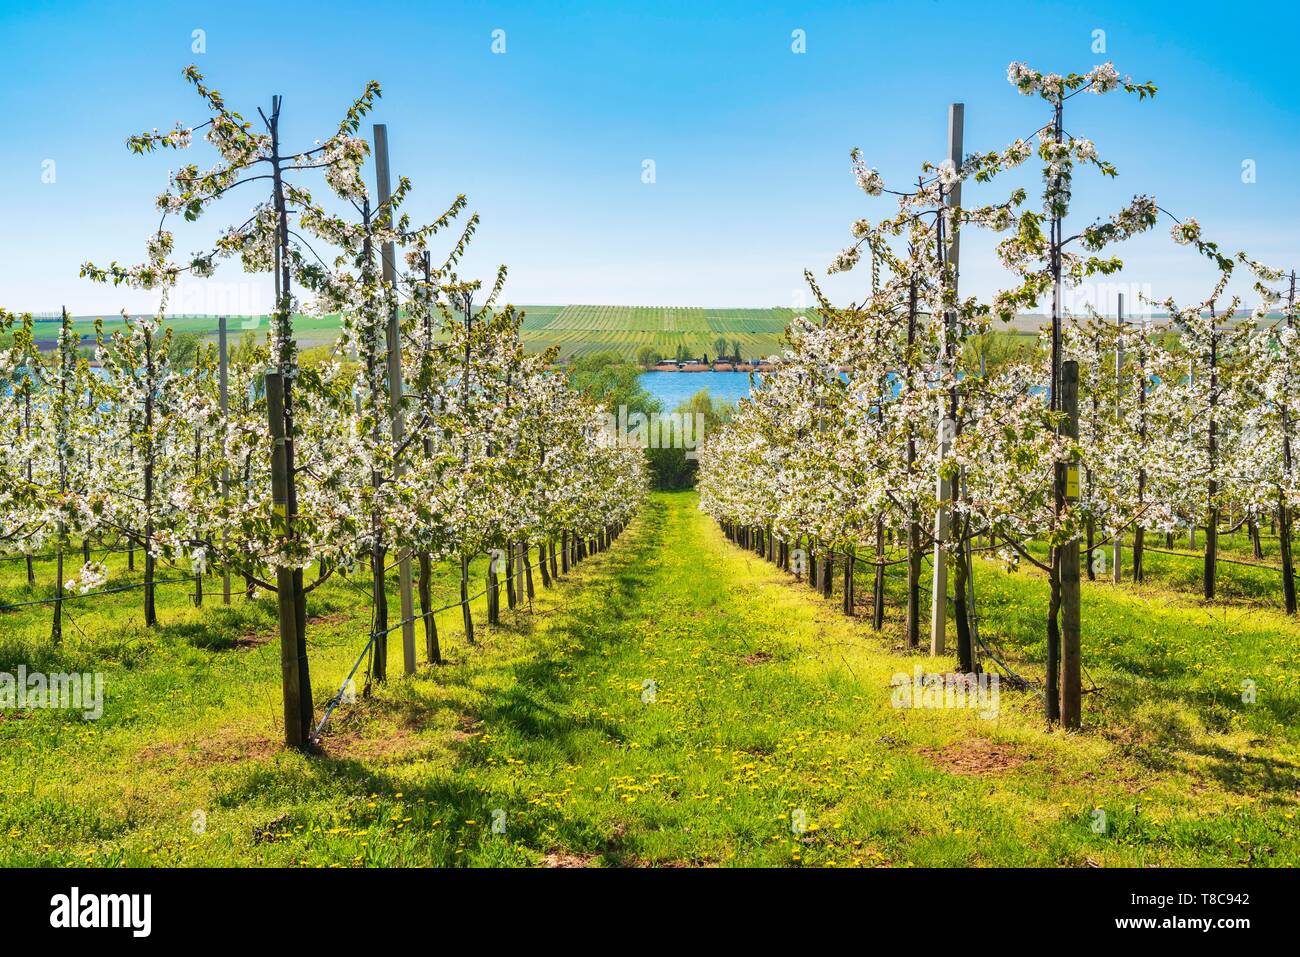 La frutticoltura, piantagione di ciliegia, la fioritura dei ciliegi, Susser vedere sullo sfondo, Mansfelder Land, Sassonia-Anhalt, Germania Foto Stock